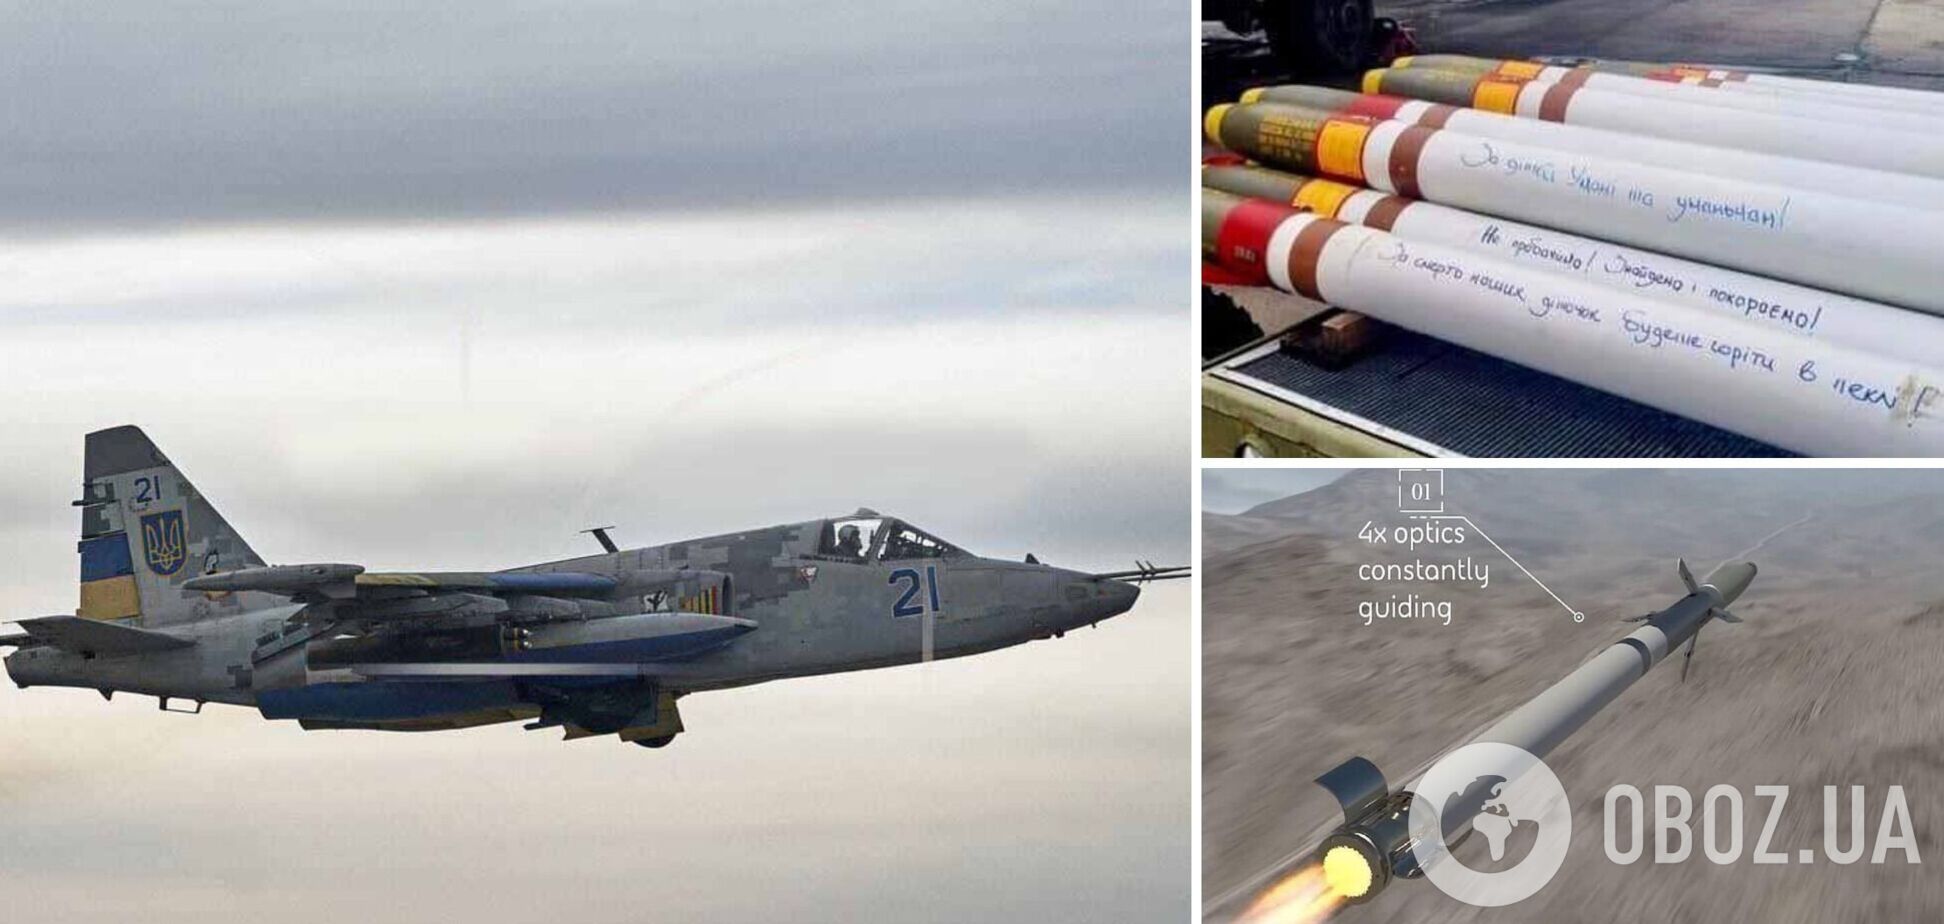 Уже на боевом дежурстве: украинские Су-25 используют американские ракеты Zuni. Первые фото